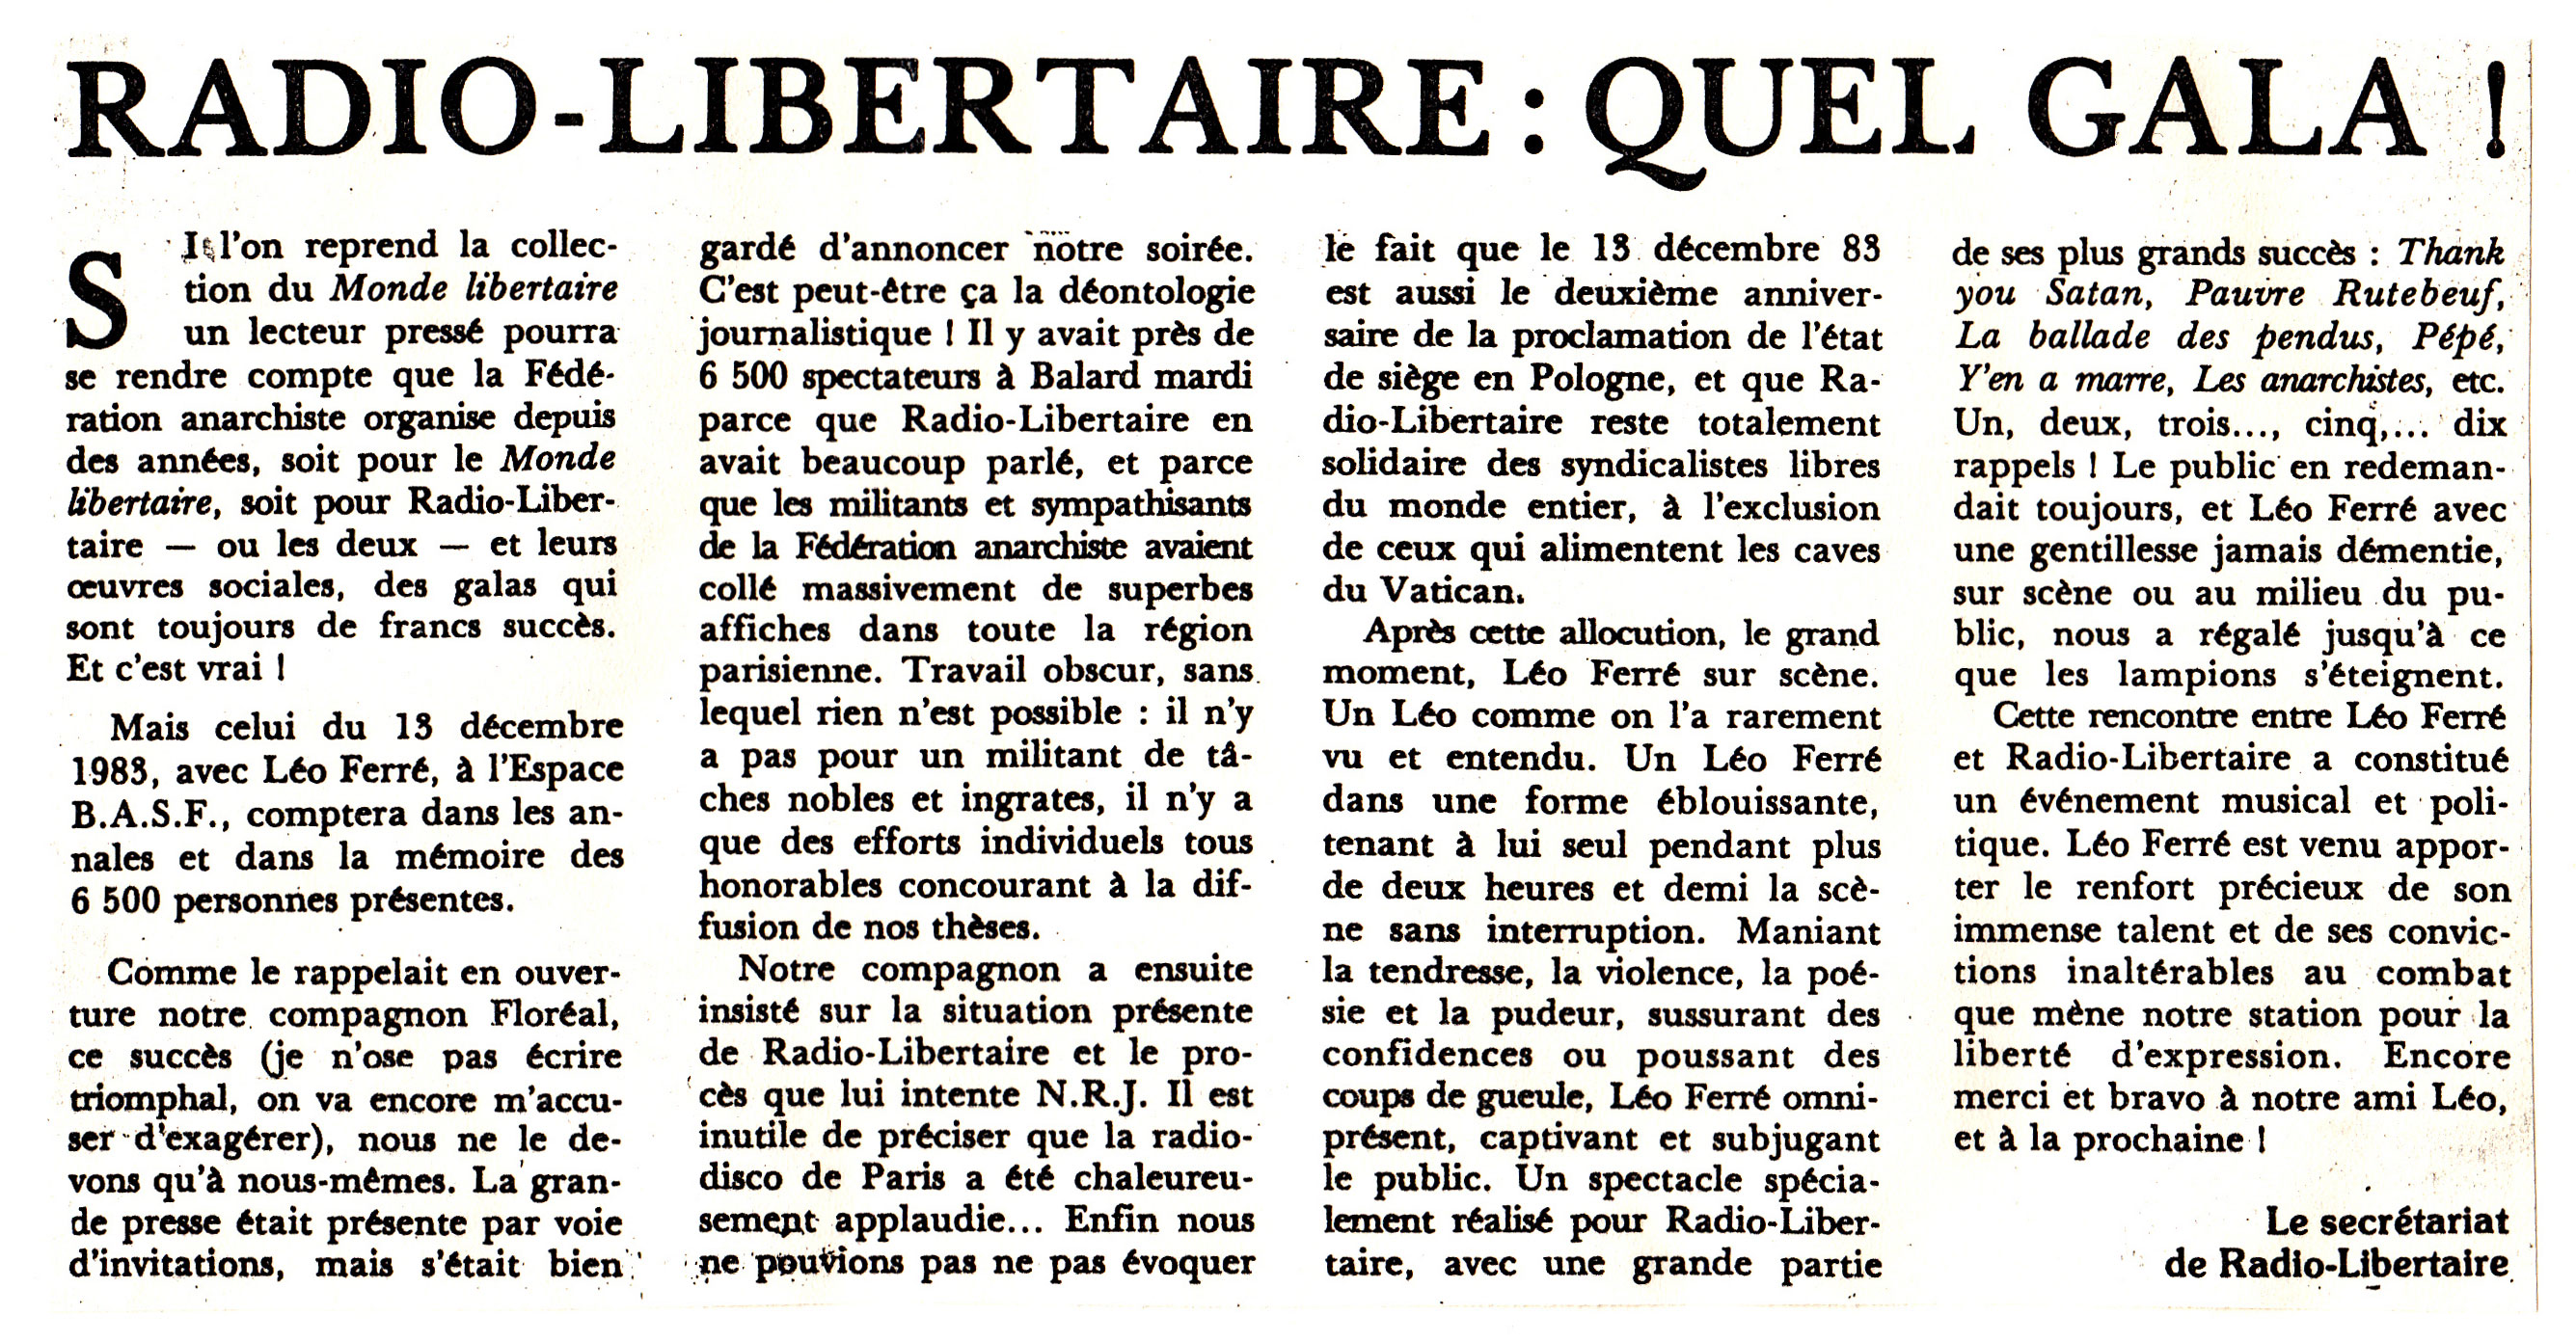 Léo Ferré - Le Monde libertaire du 22 décembre 1983